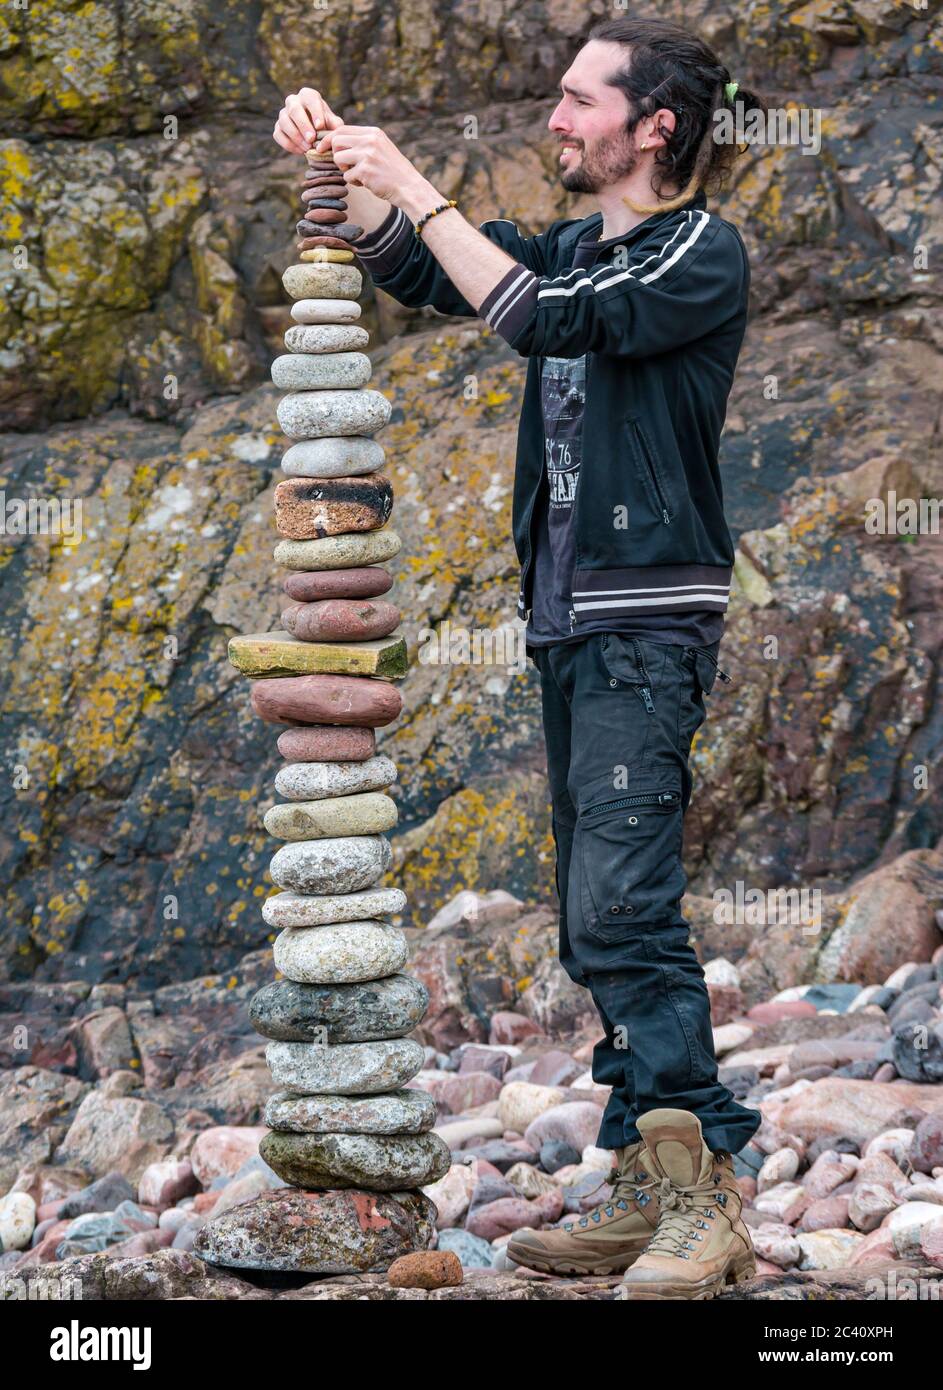 SP Ranza pietra impilatore pietre equilibratura pietre, Campionato europeo di pietra impilamento, Eye Cave spiaggia, Dunbar, East Lothian, Scozia, Regno Unito Foto Stock